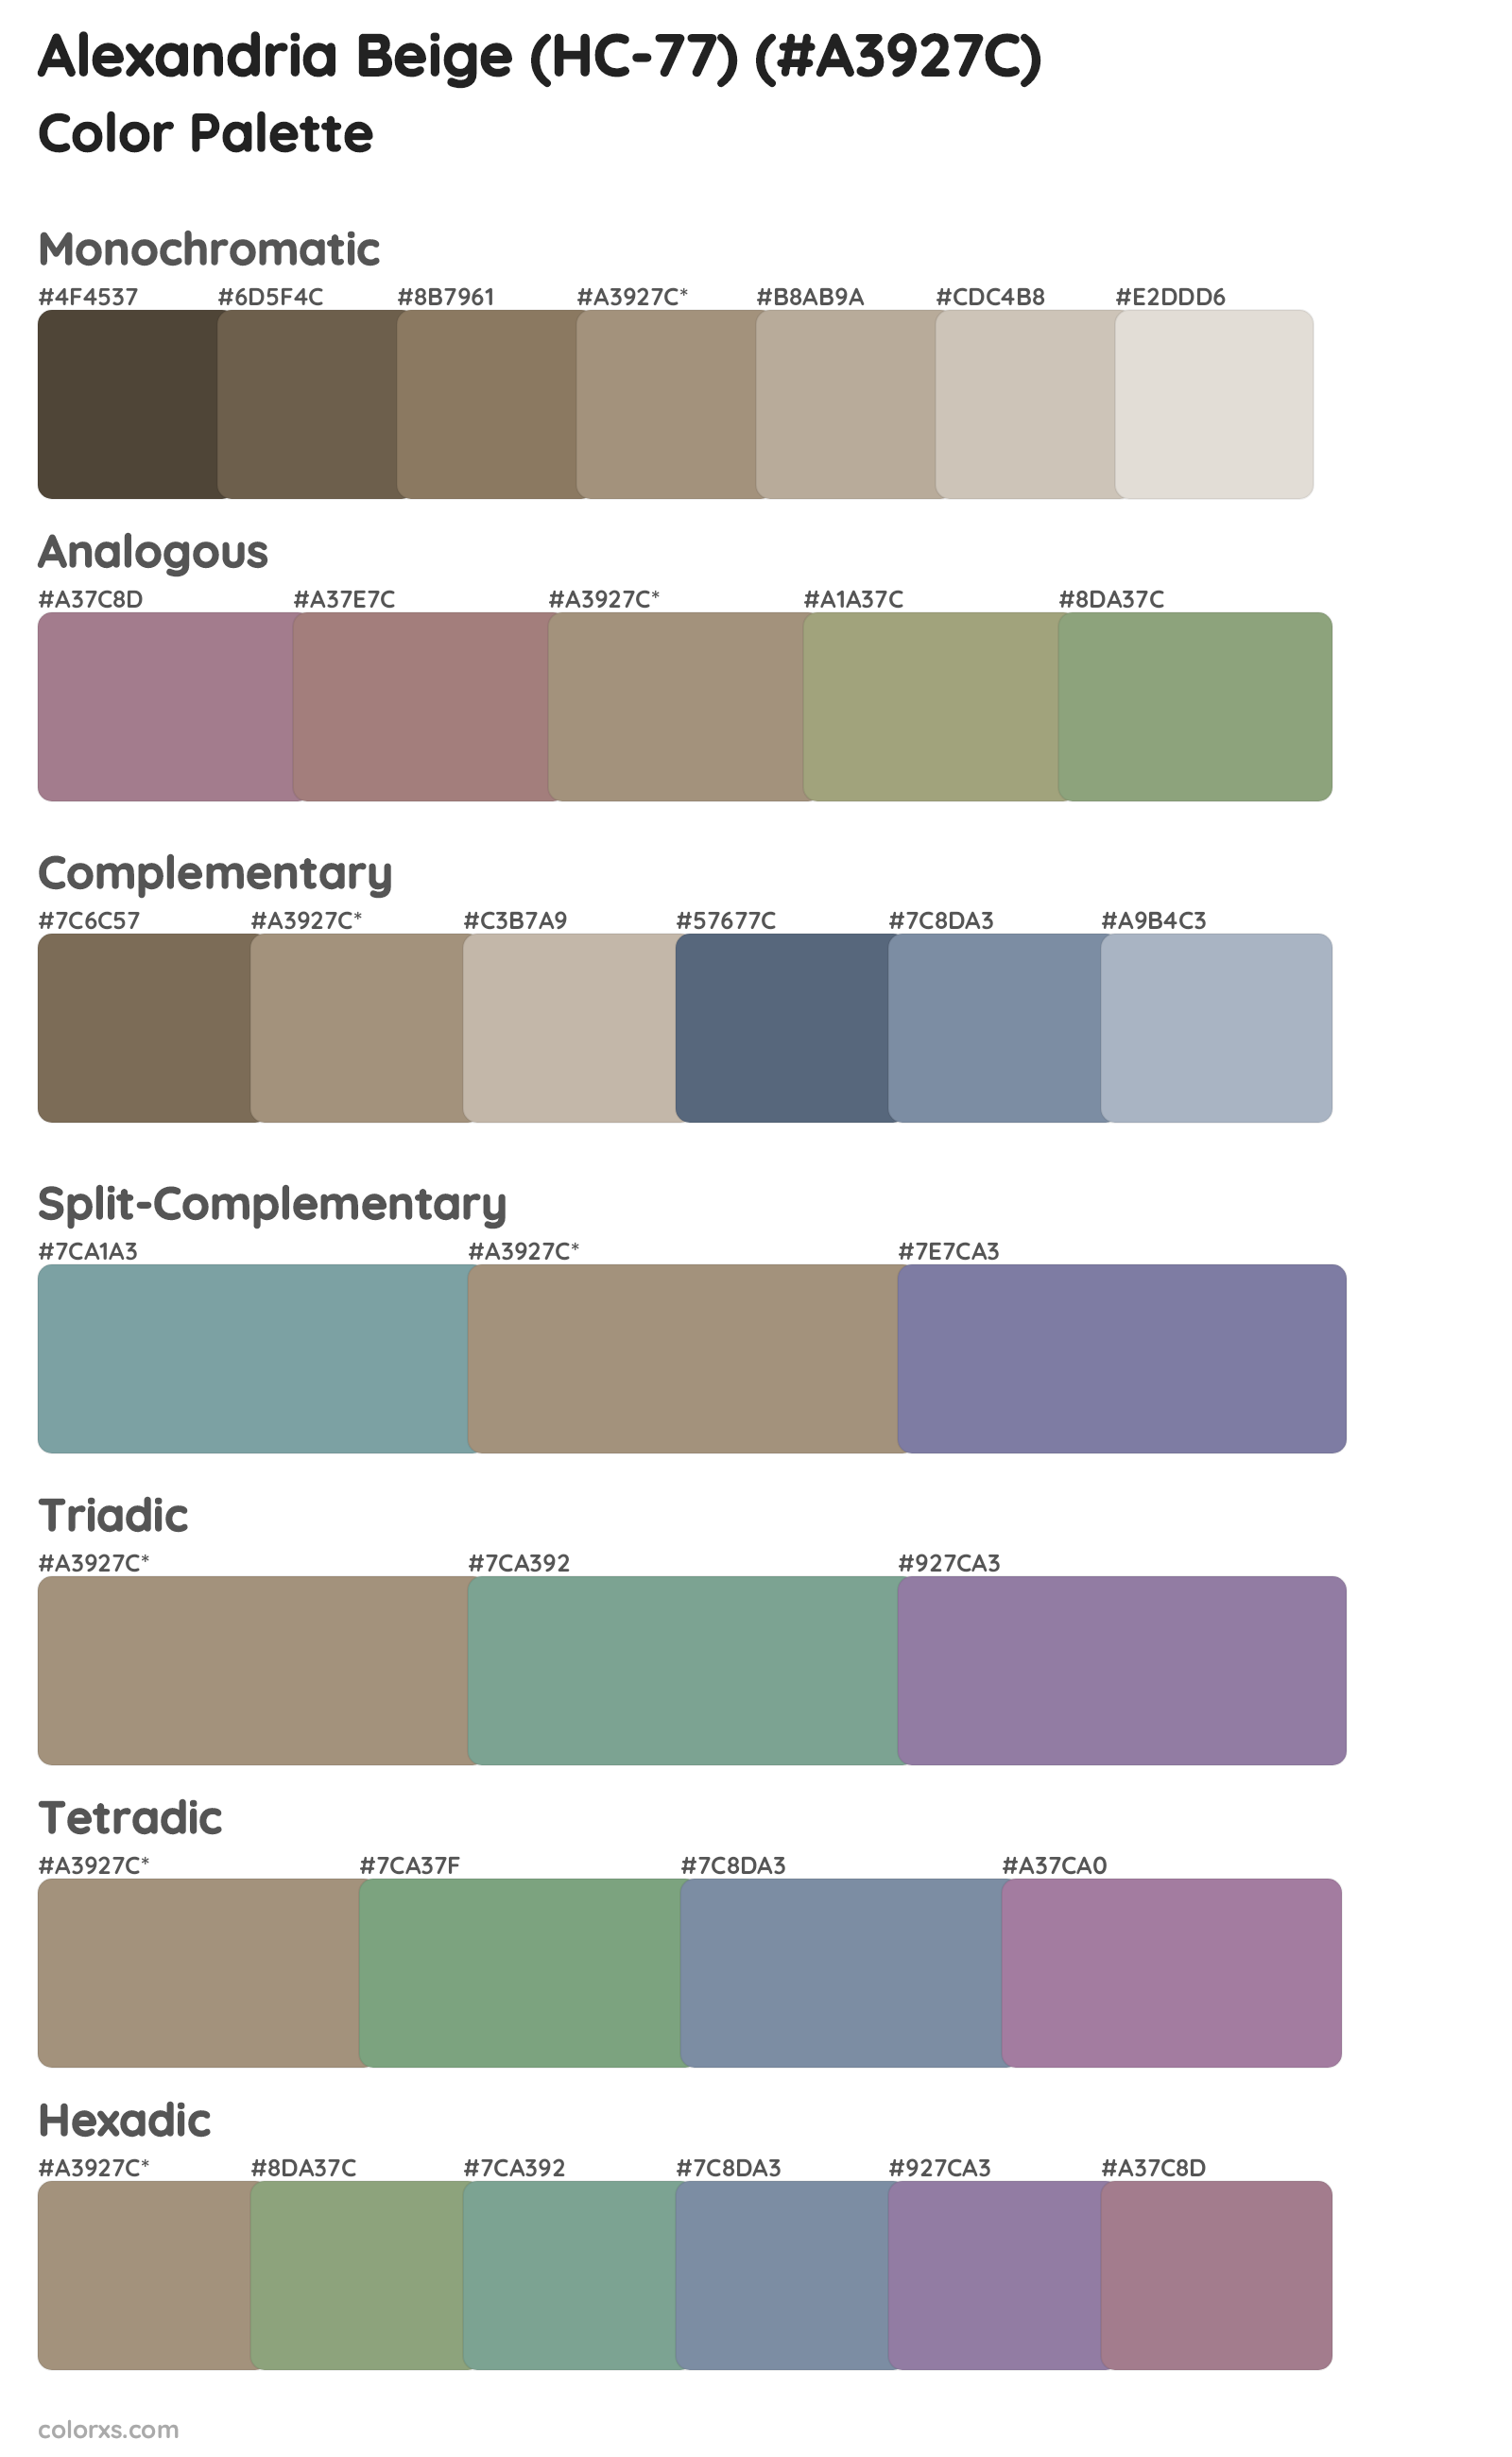 Alexandria Beige (HC-77) Color Scheme Palettes